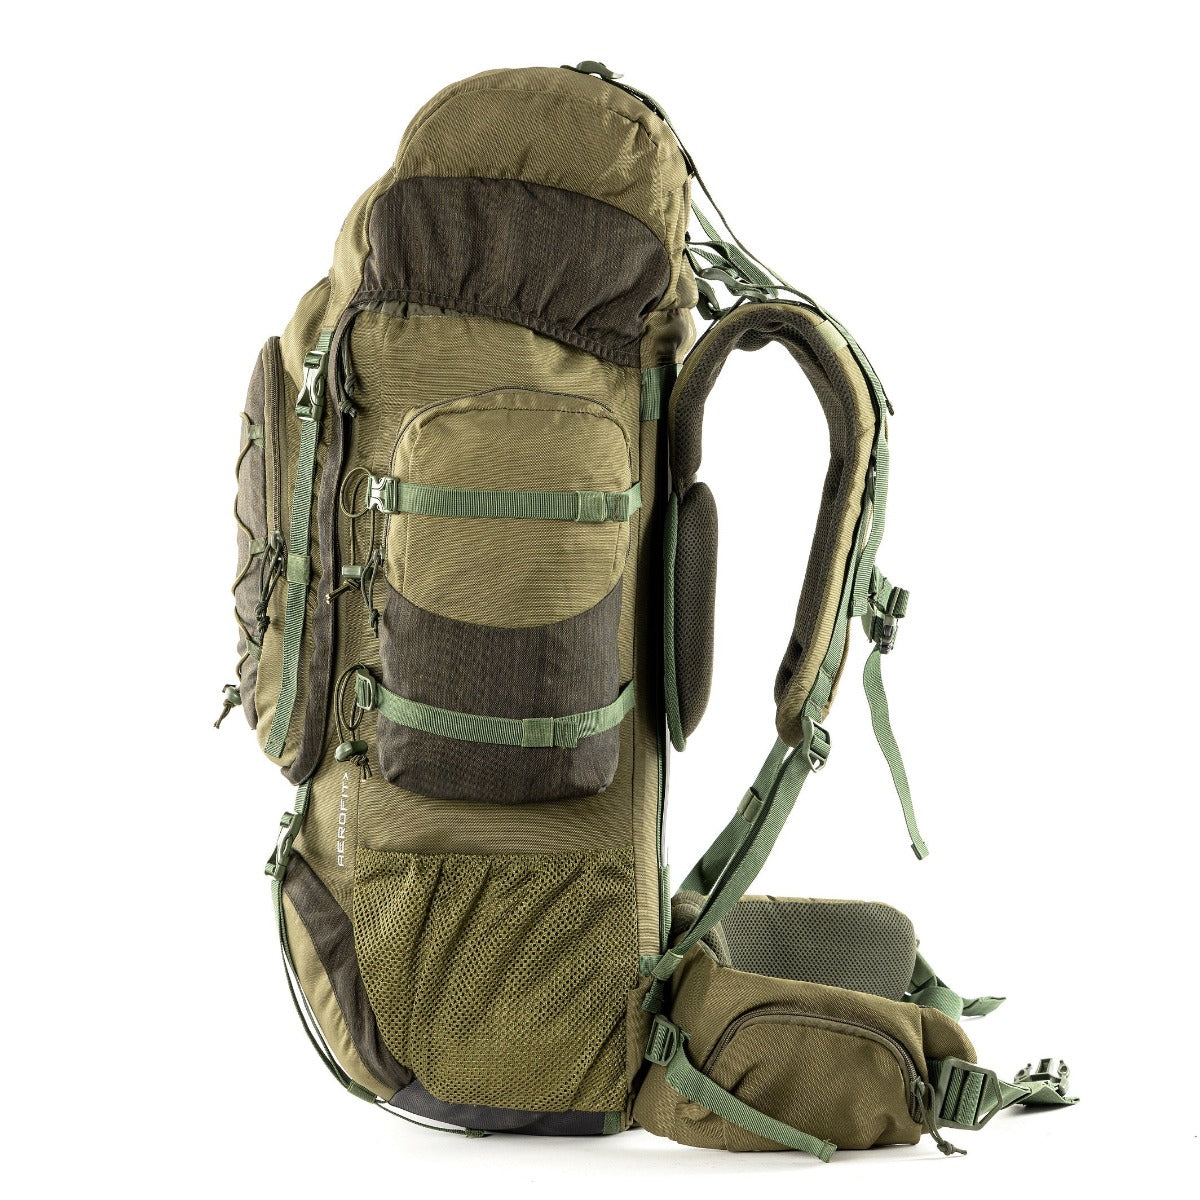 Walker Pro Trekking and Hiking Rucksack - 60 Litre - Olive Green 5